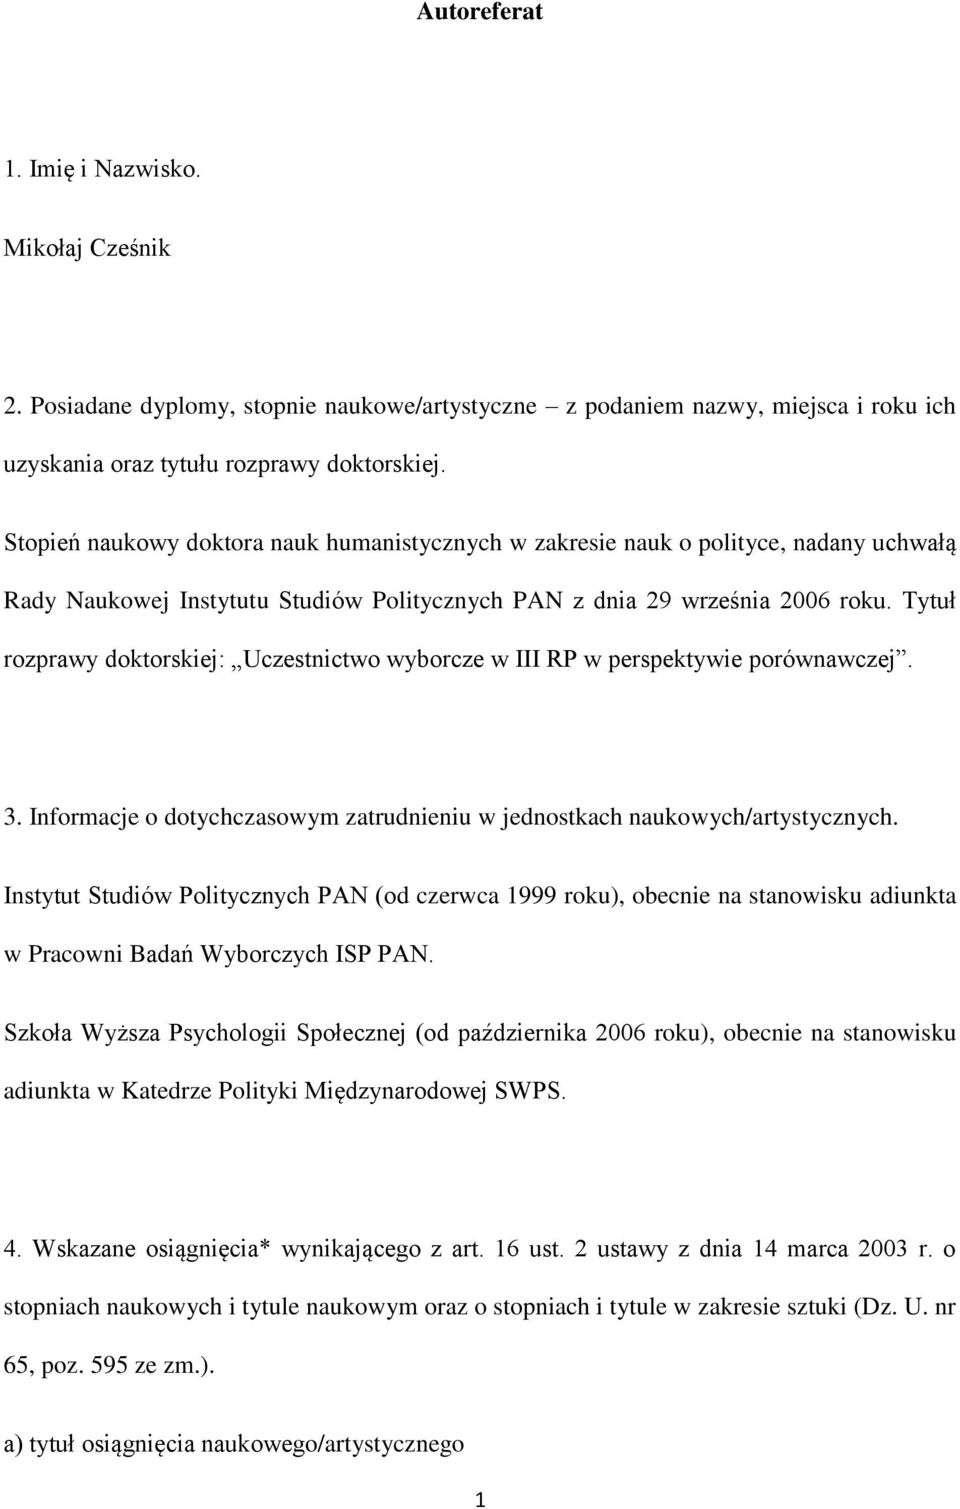 Tytuł rozprawy doktorskiej: Uczestnictwo wyborcze w III RP w perspektywie porównawczej. 3. Informacje o dotychczasowym zatrudnieniu w jednostkach naukowych/artystycznych.